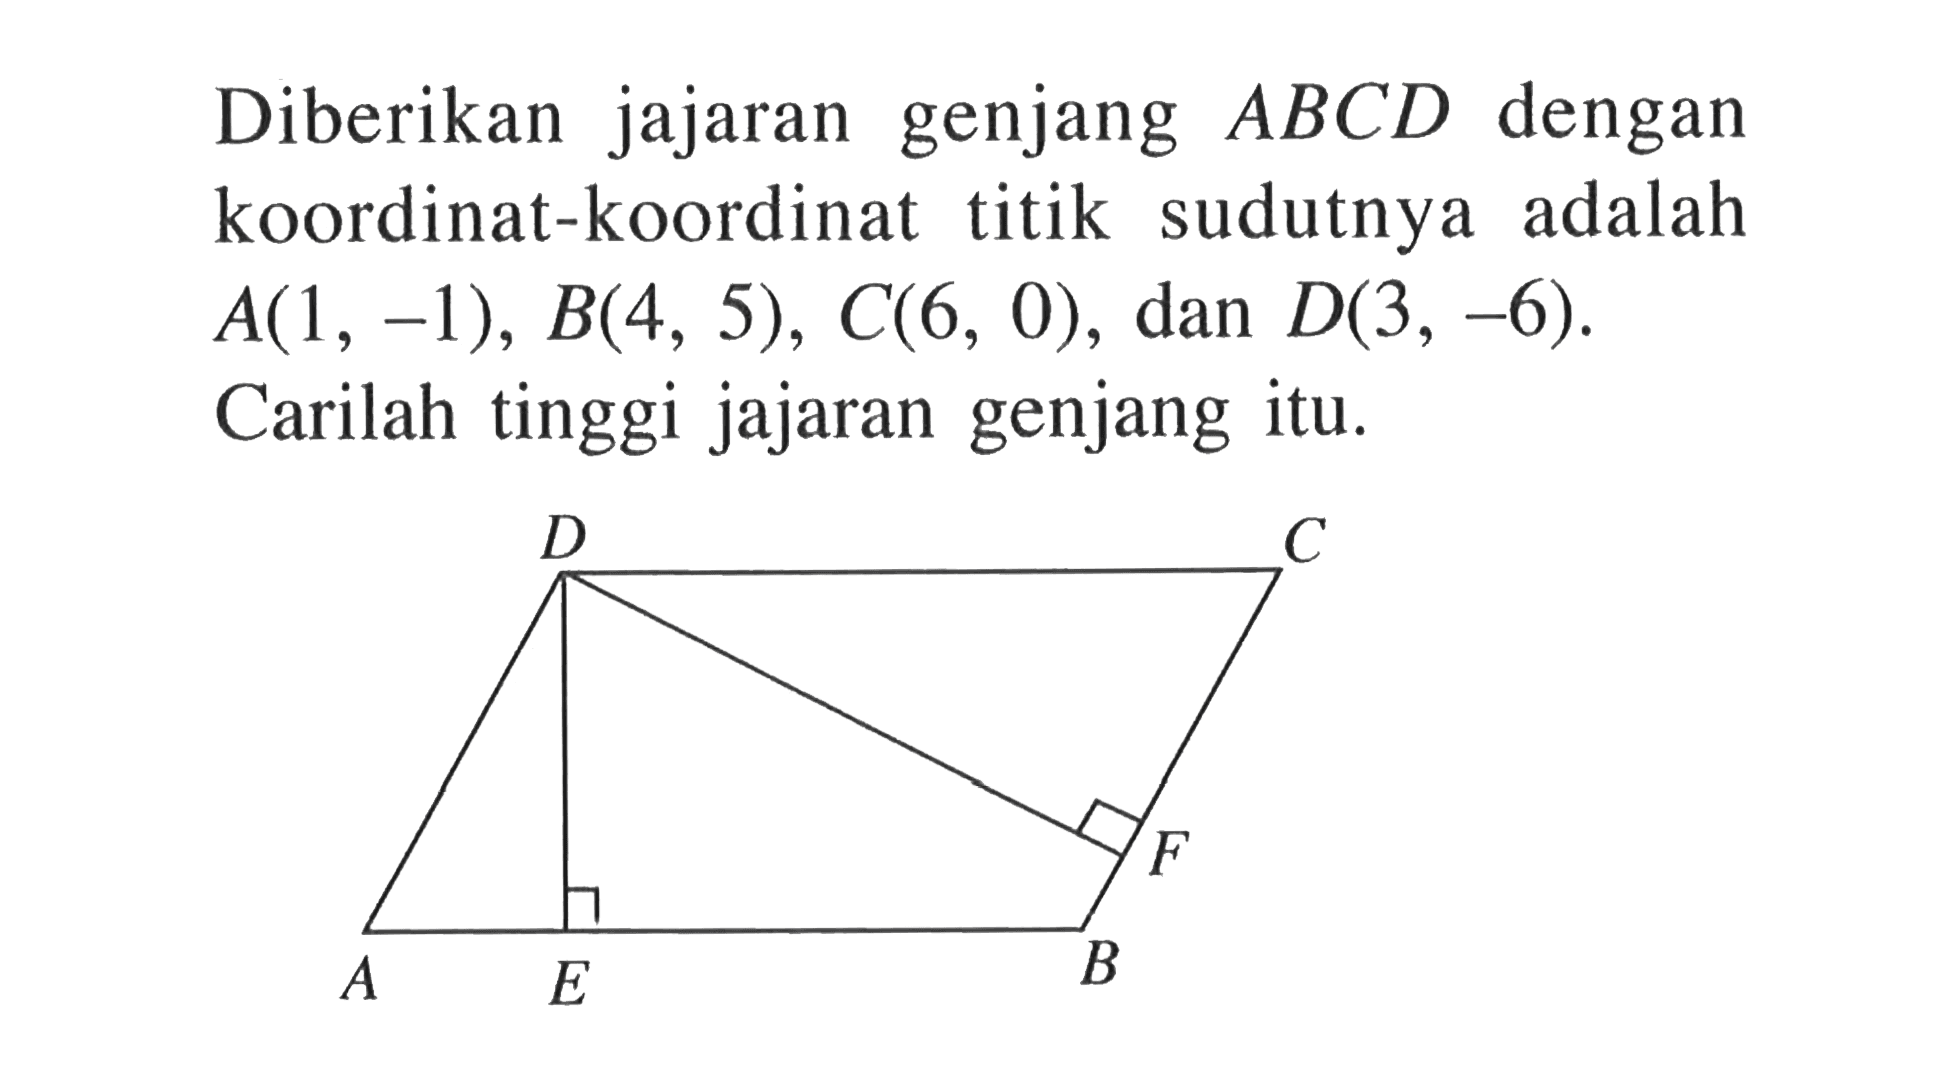 Diberikan jajaran genjang ABCD dengan koordinat-koordinat titik sudutnya adalah A(1, -1), B(4, 5), C(6, 0) , dan D(3, -6). Carilah tinggi jajaran genjang itu. D C A E B